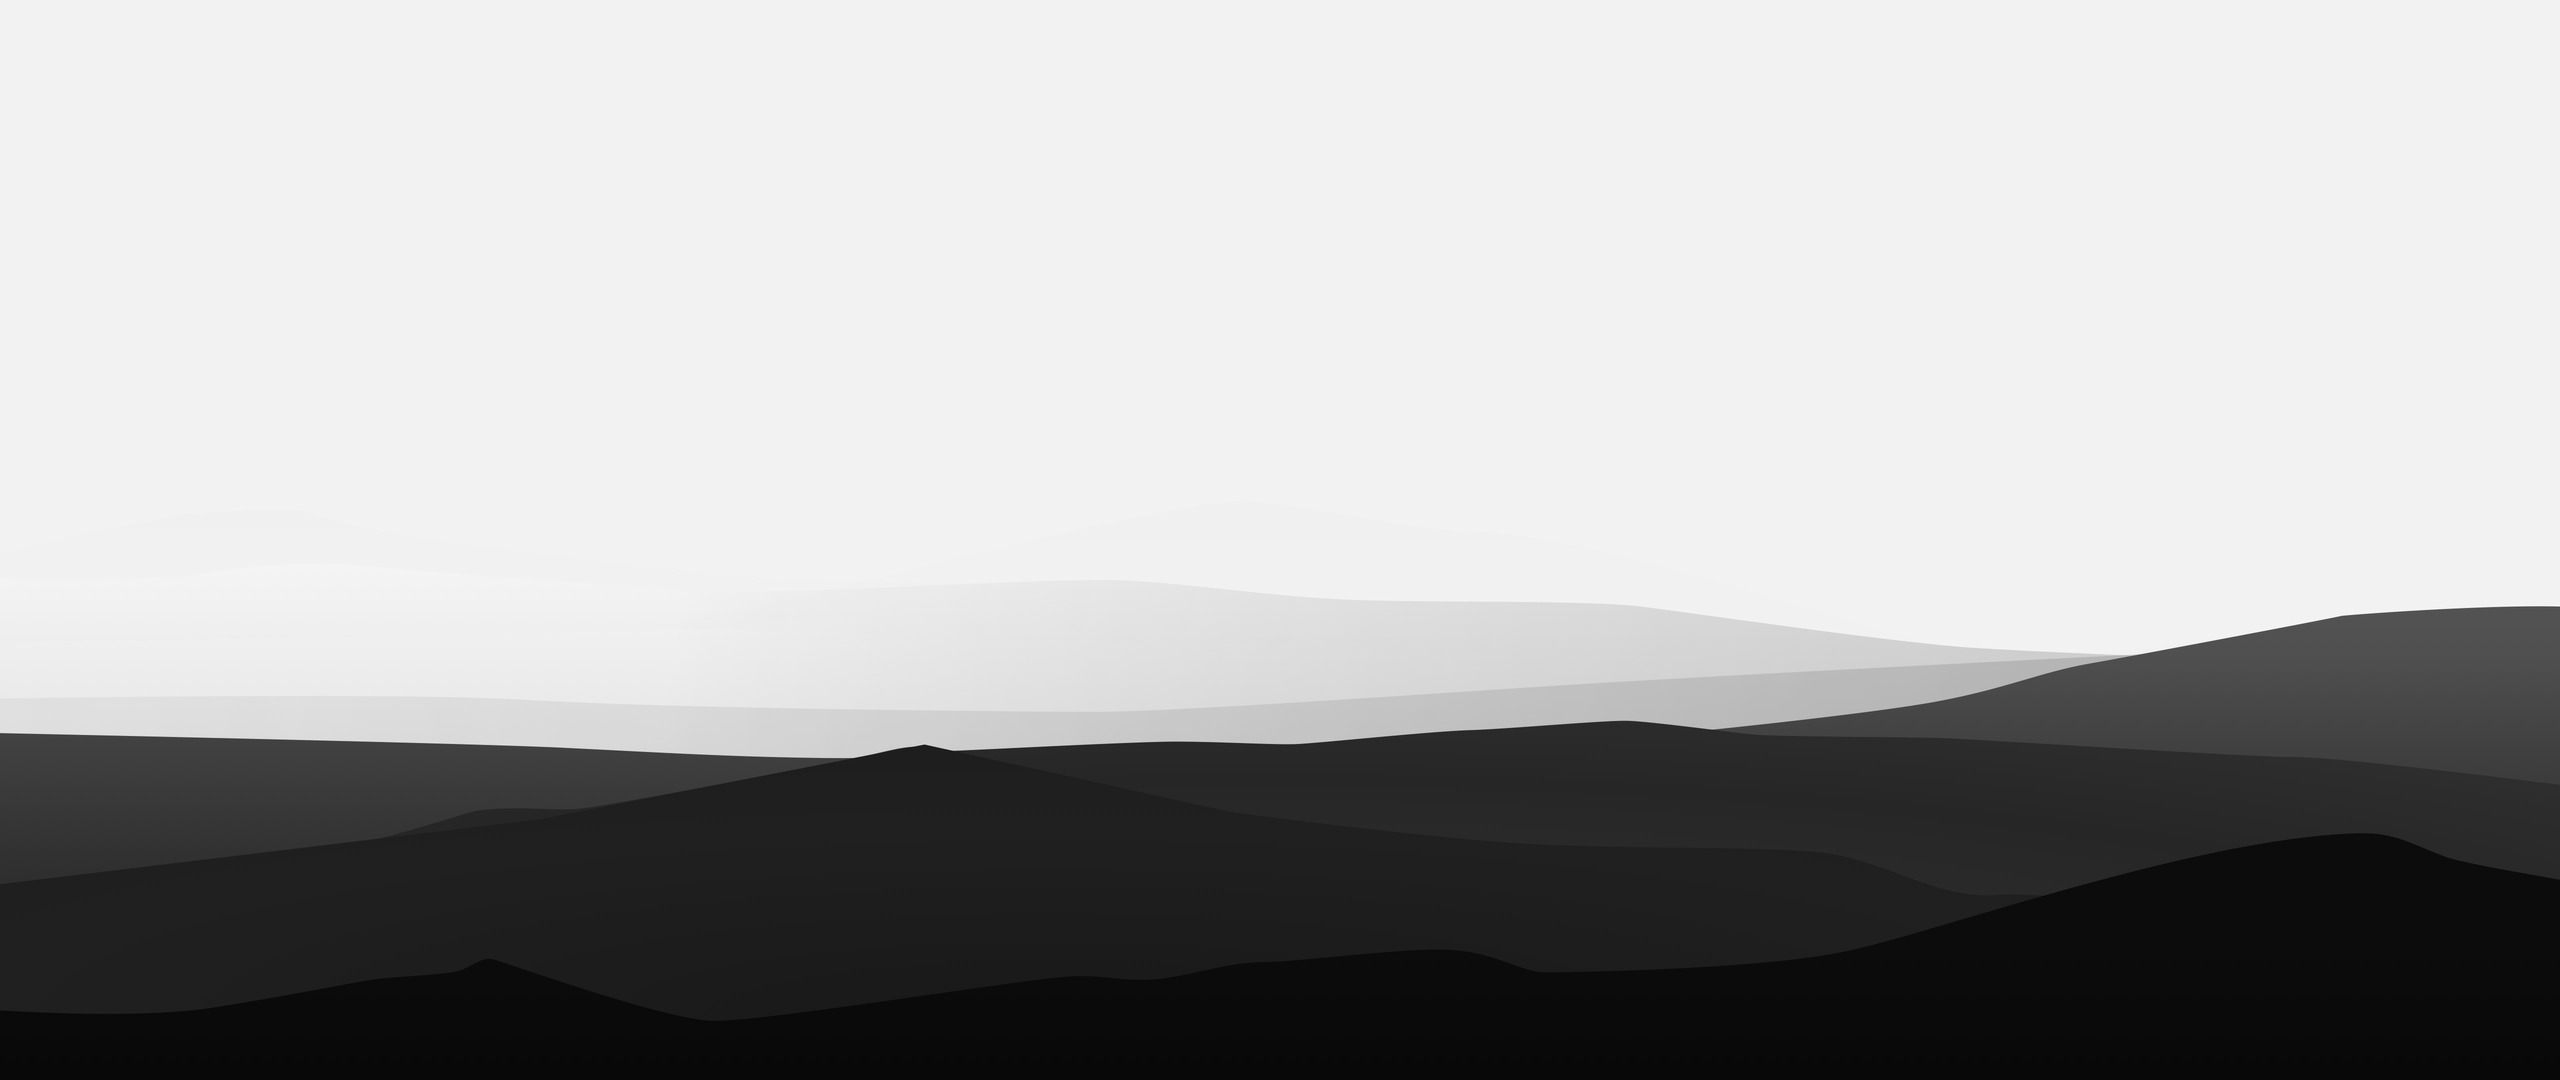 2560x1080 Minimalist Mountains Black And White 2560x1080 ...